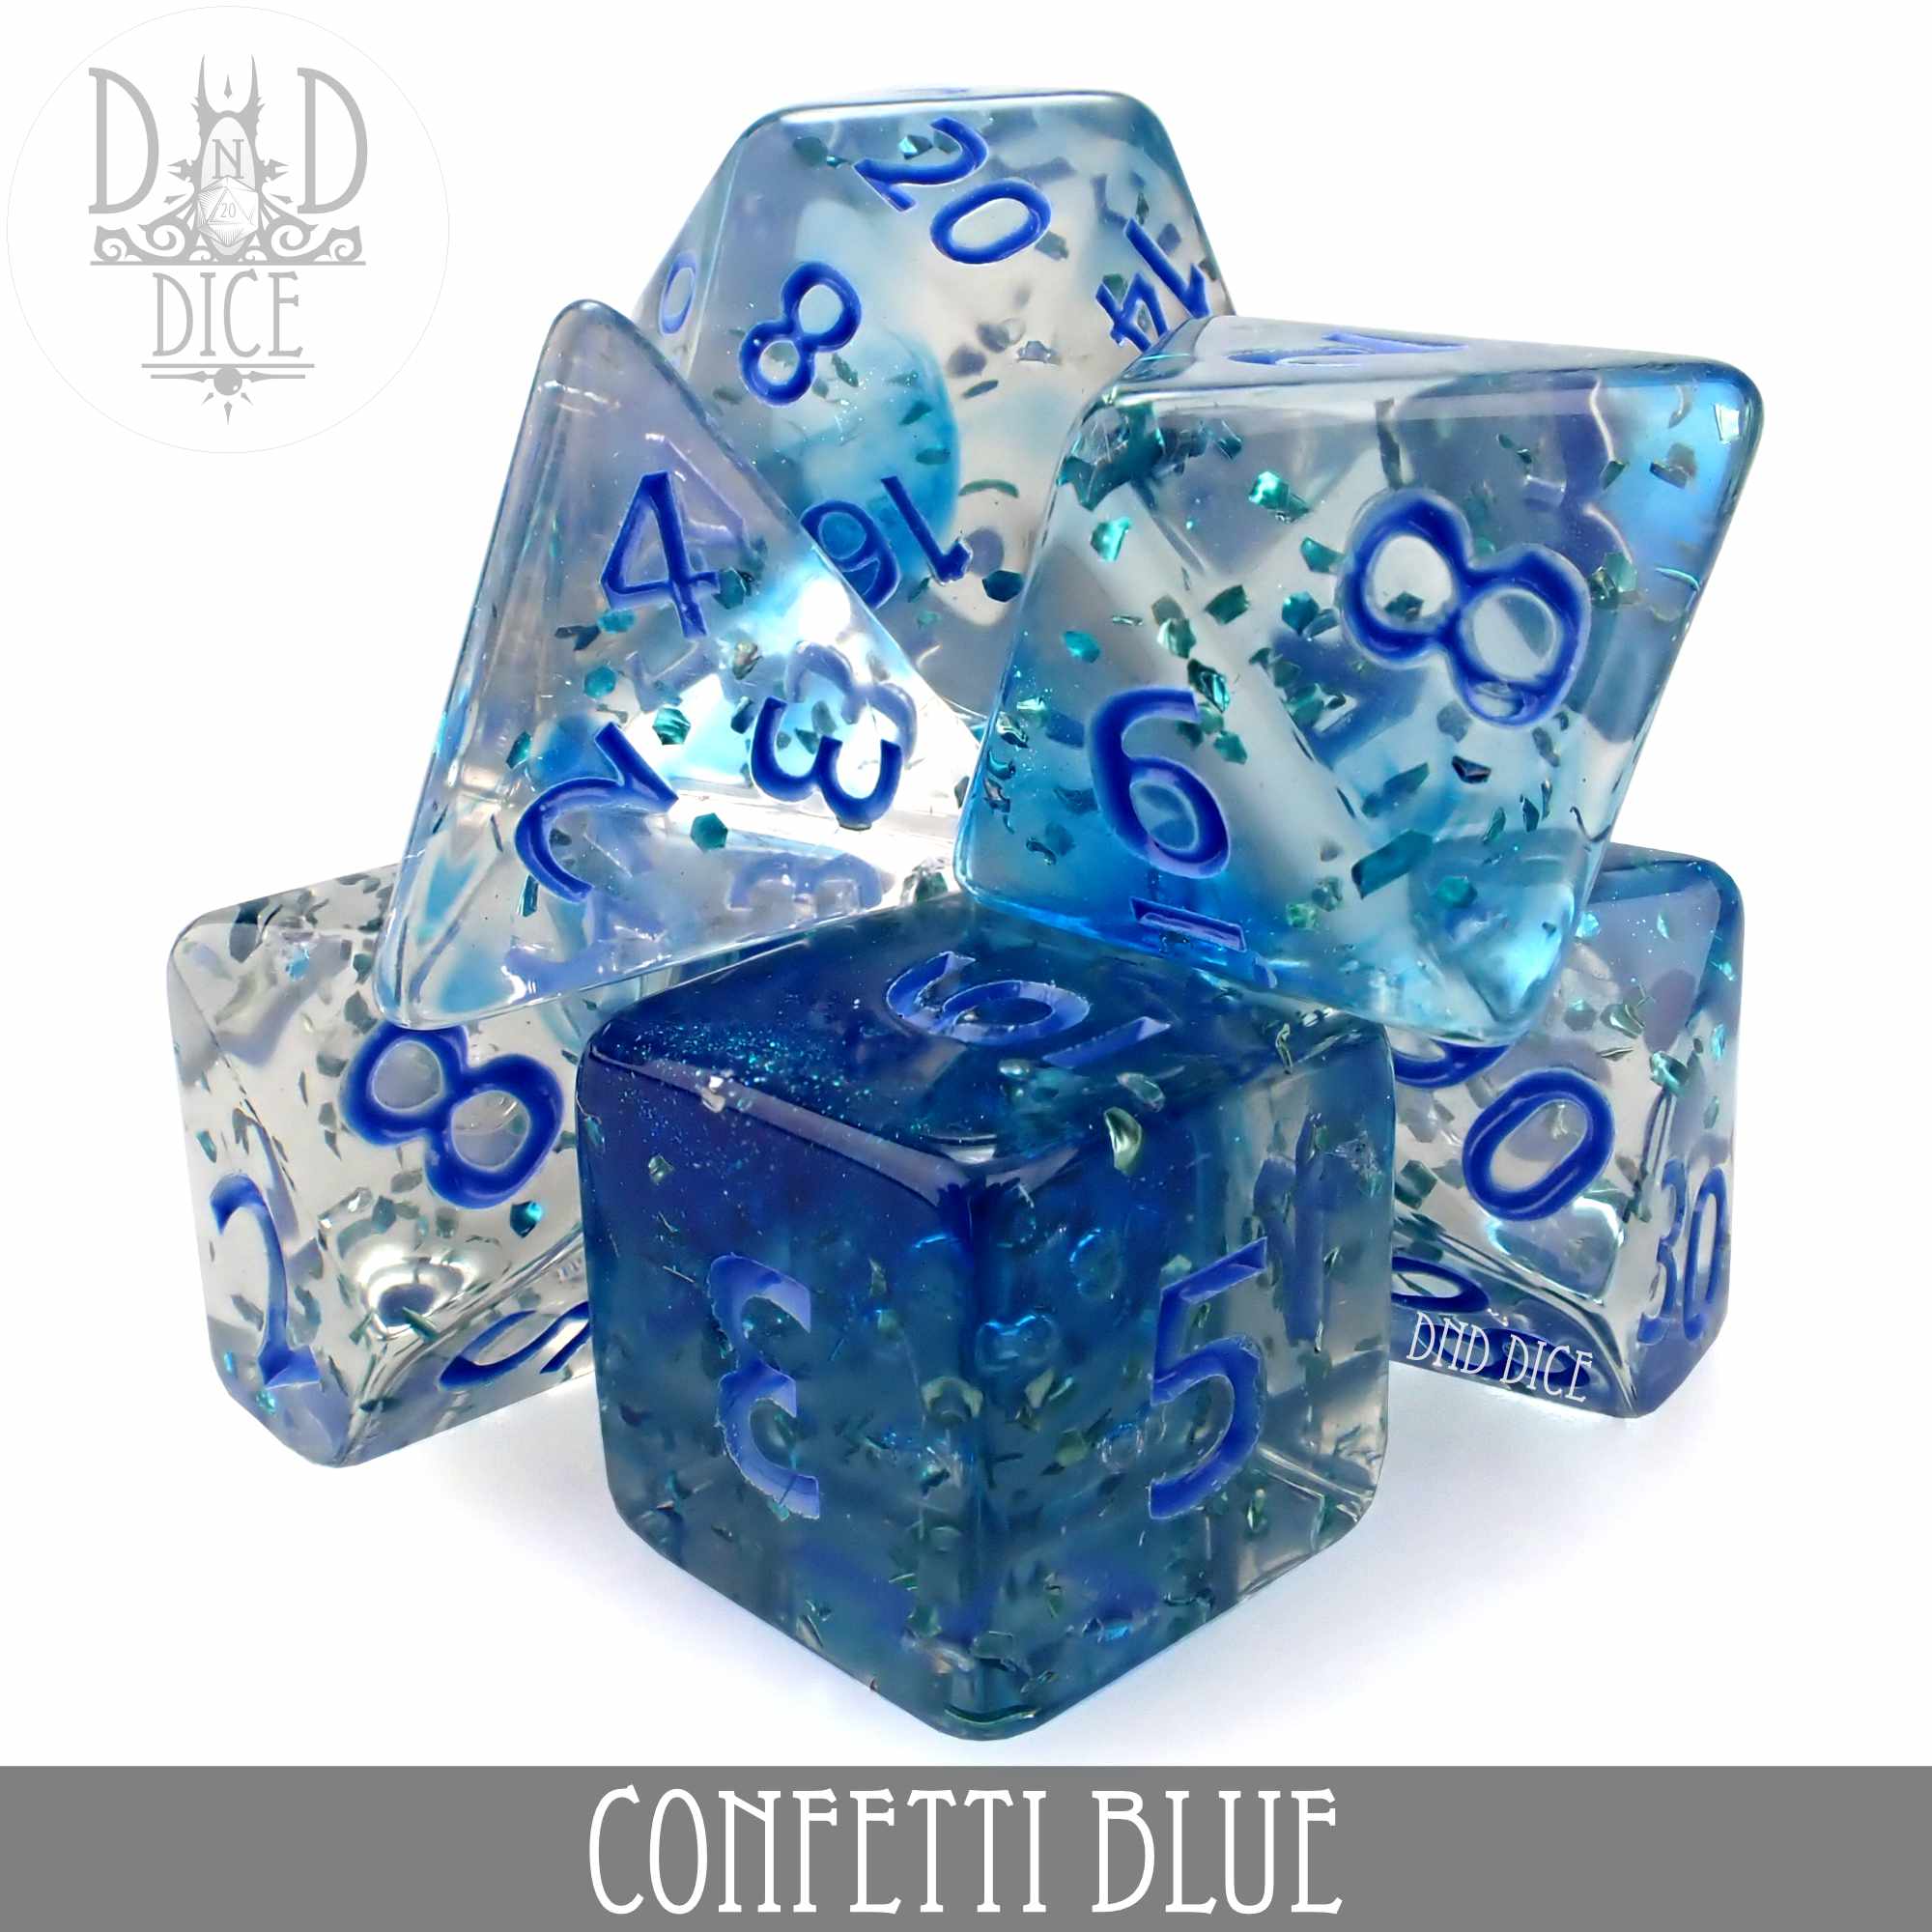 Confetti Blue Dice Set